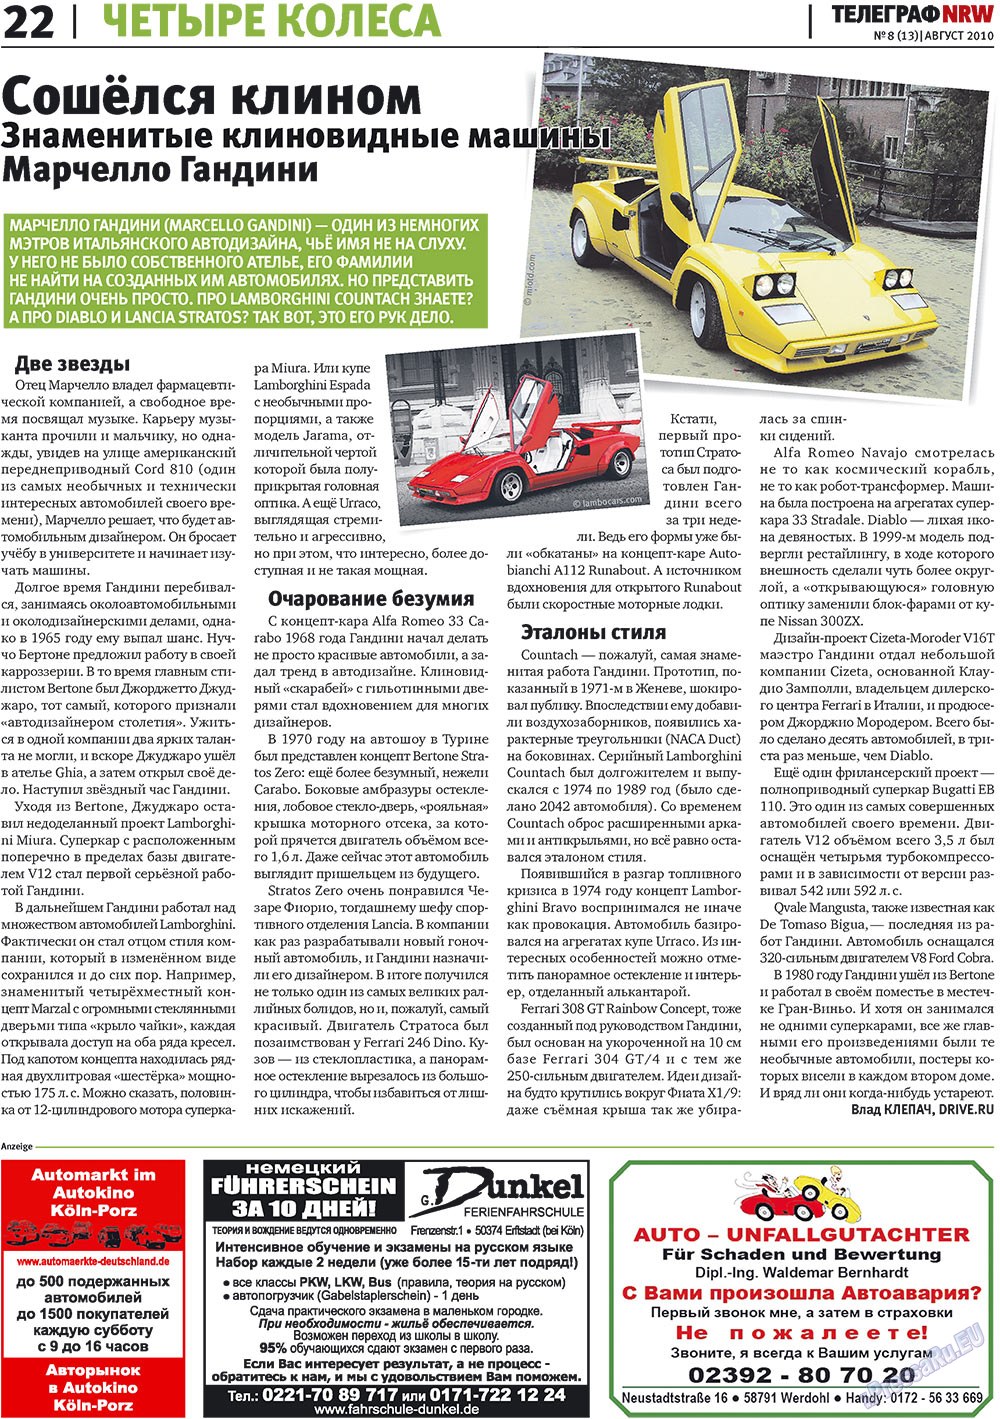 Telegraf NRW (Zeitung). 2010 Jahr, Ausgabe 8, Seite 22